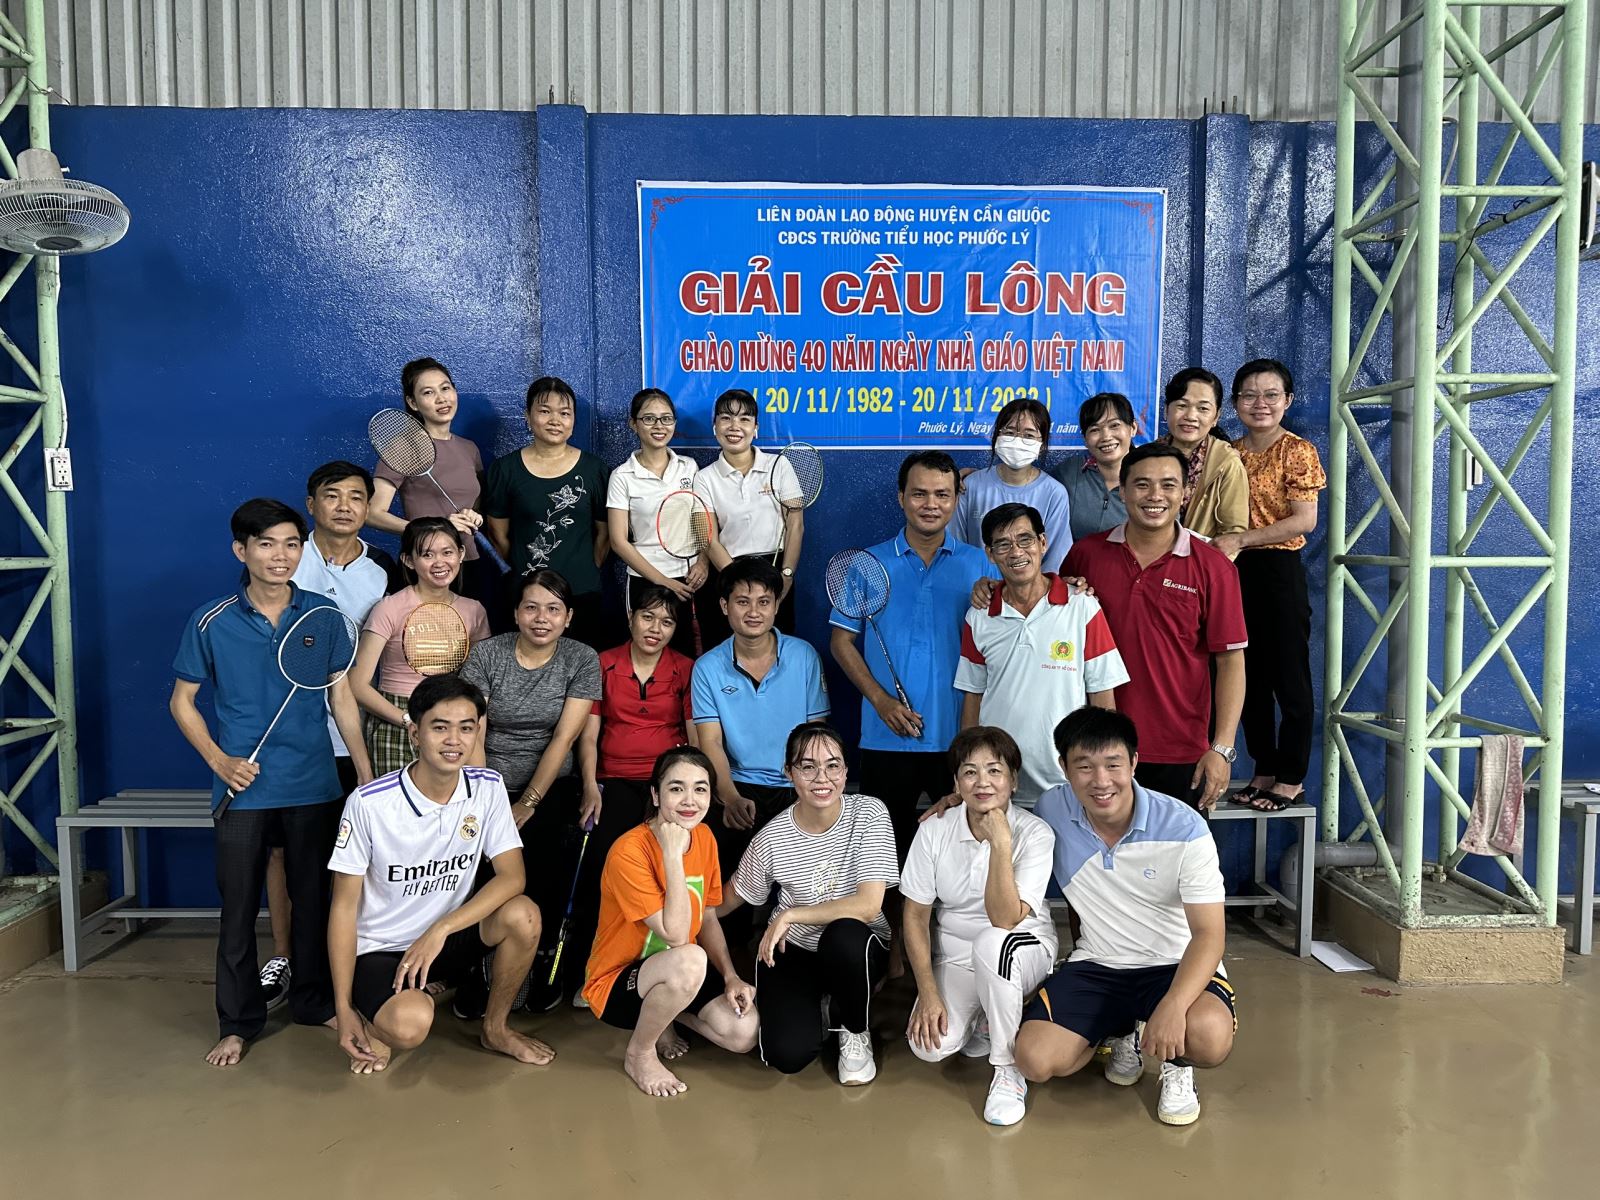 Công đoàn cơ sở Tiểu học Phước Lý tổ chức giải cầu lông nhân dịp kỷ niệm 40 năm Ngày nhà giáo Việt Nam (20/11/1982-20/11/2022)